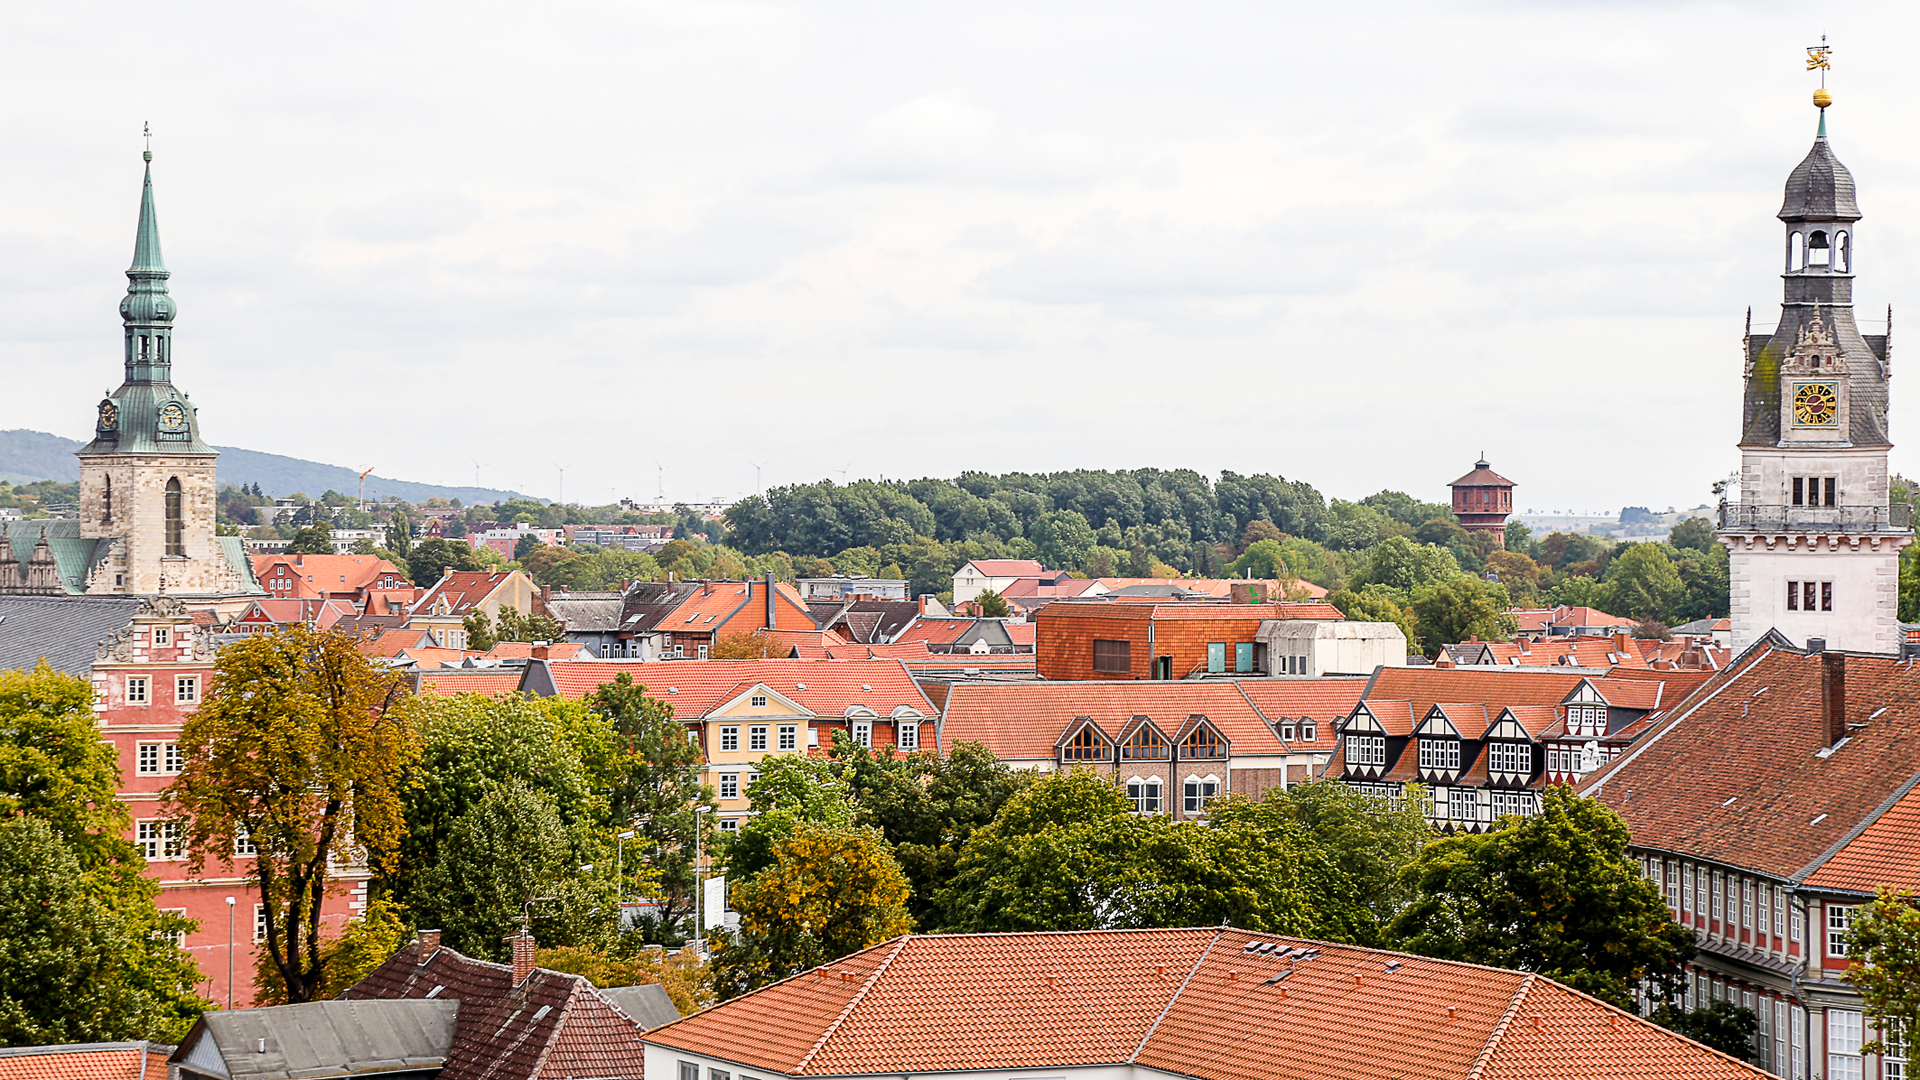 Blick auf die Wolfenbütteler Altstadt mit Hauptkirche, Wasserturm und Schlossturm